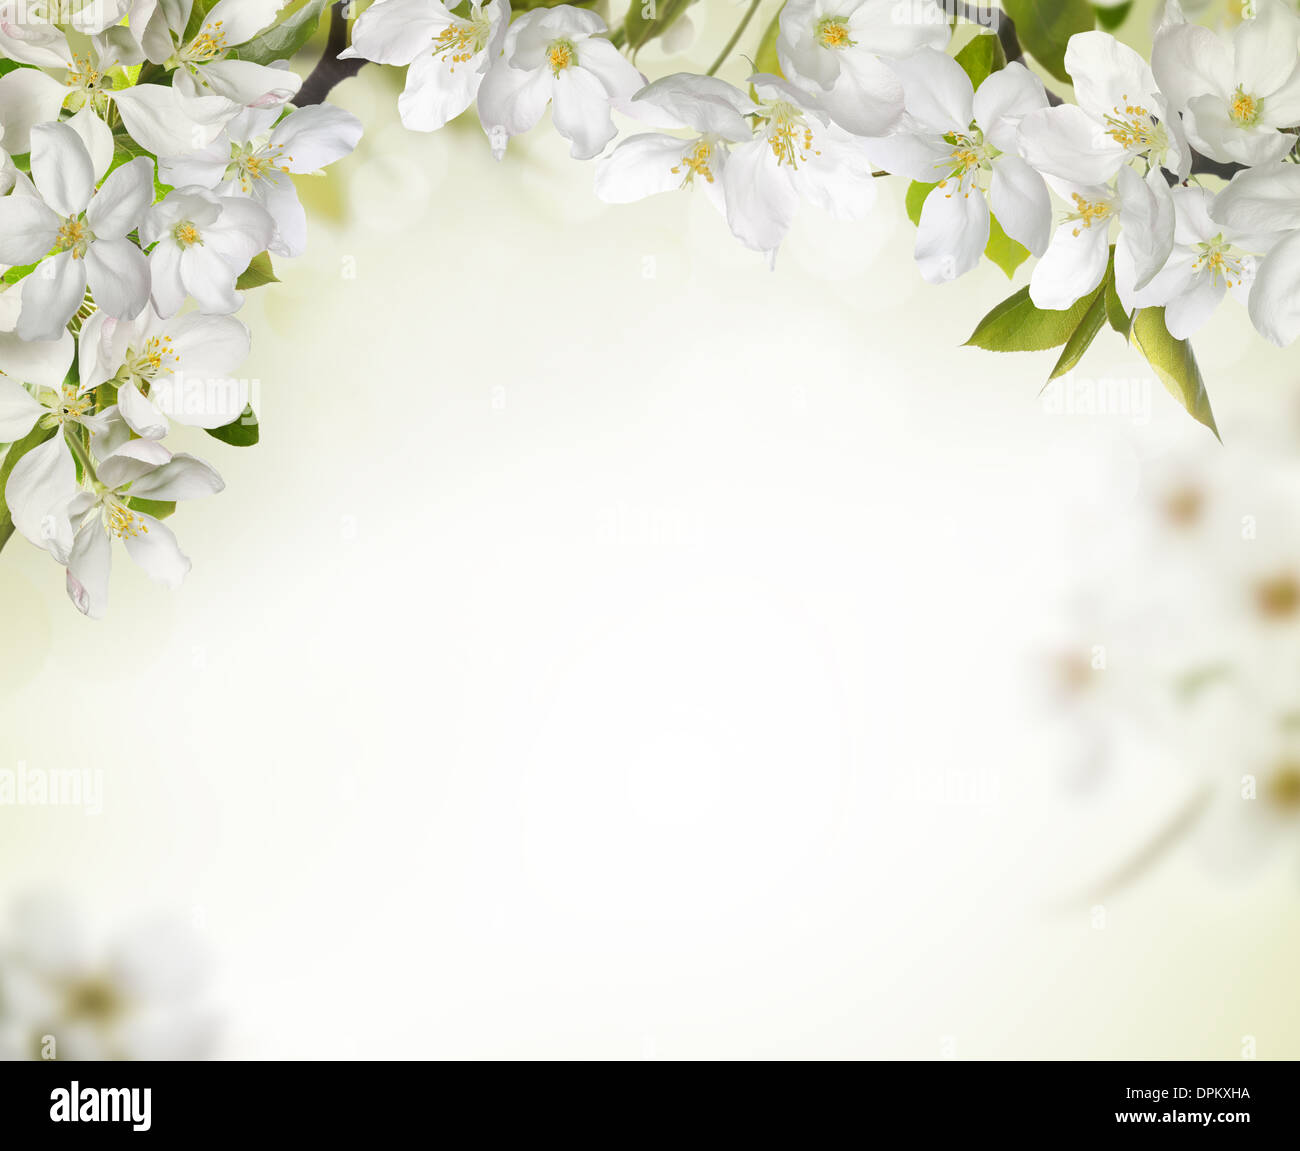 Frühling Kirschblüte Hintergründe, Platz für Ihren Text zu kopieren. Stockfoto